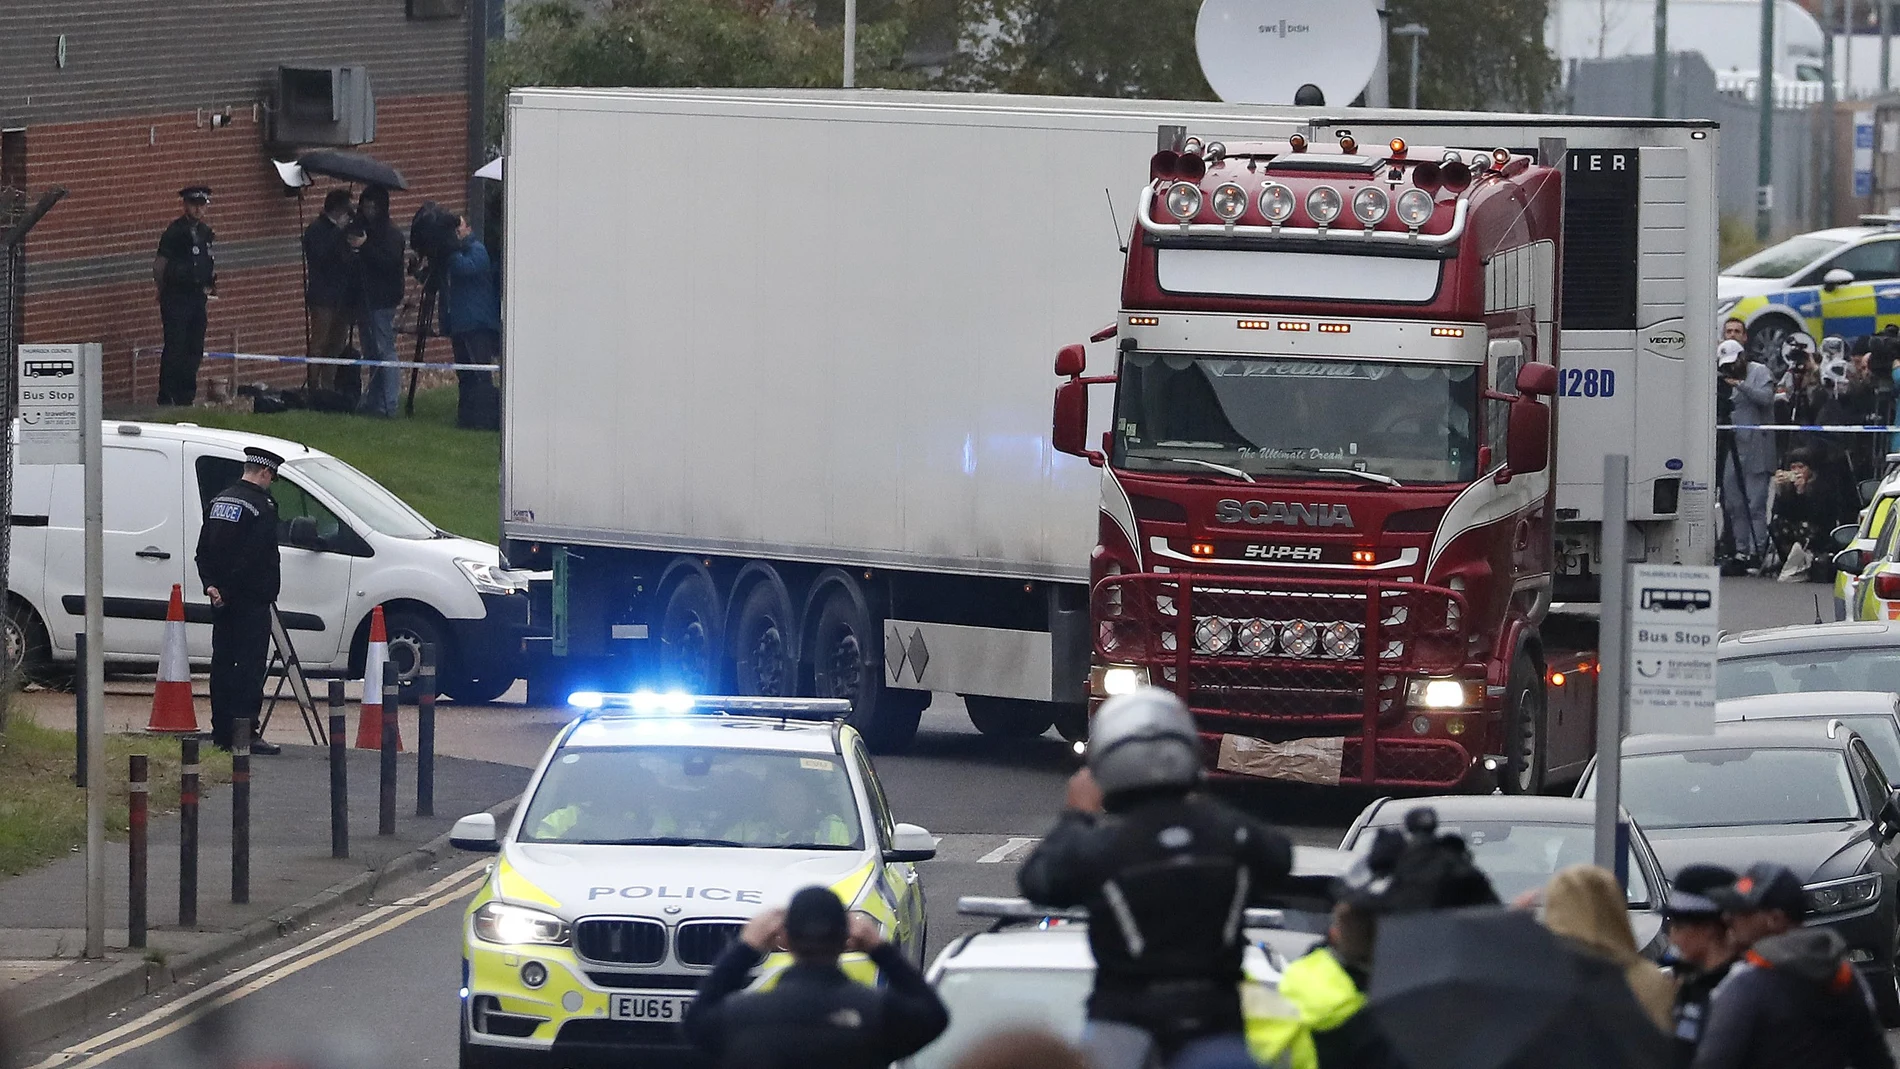 El hallazgo de los 39 cadáveres en el camión frigorífico conmocionó a la sociedad británica el otoño pasado